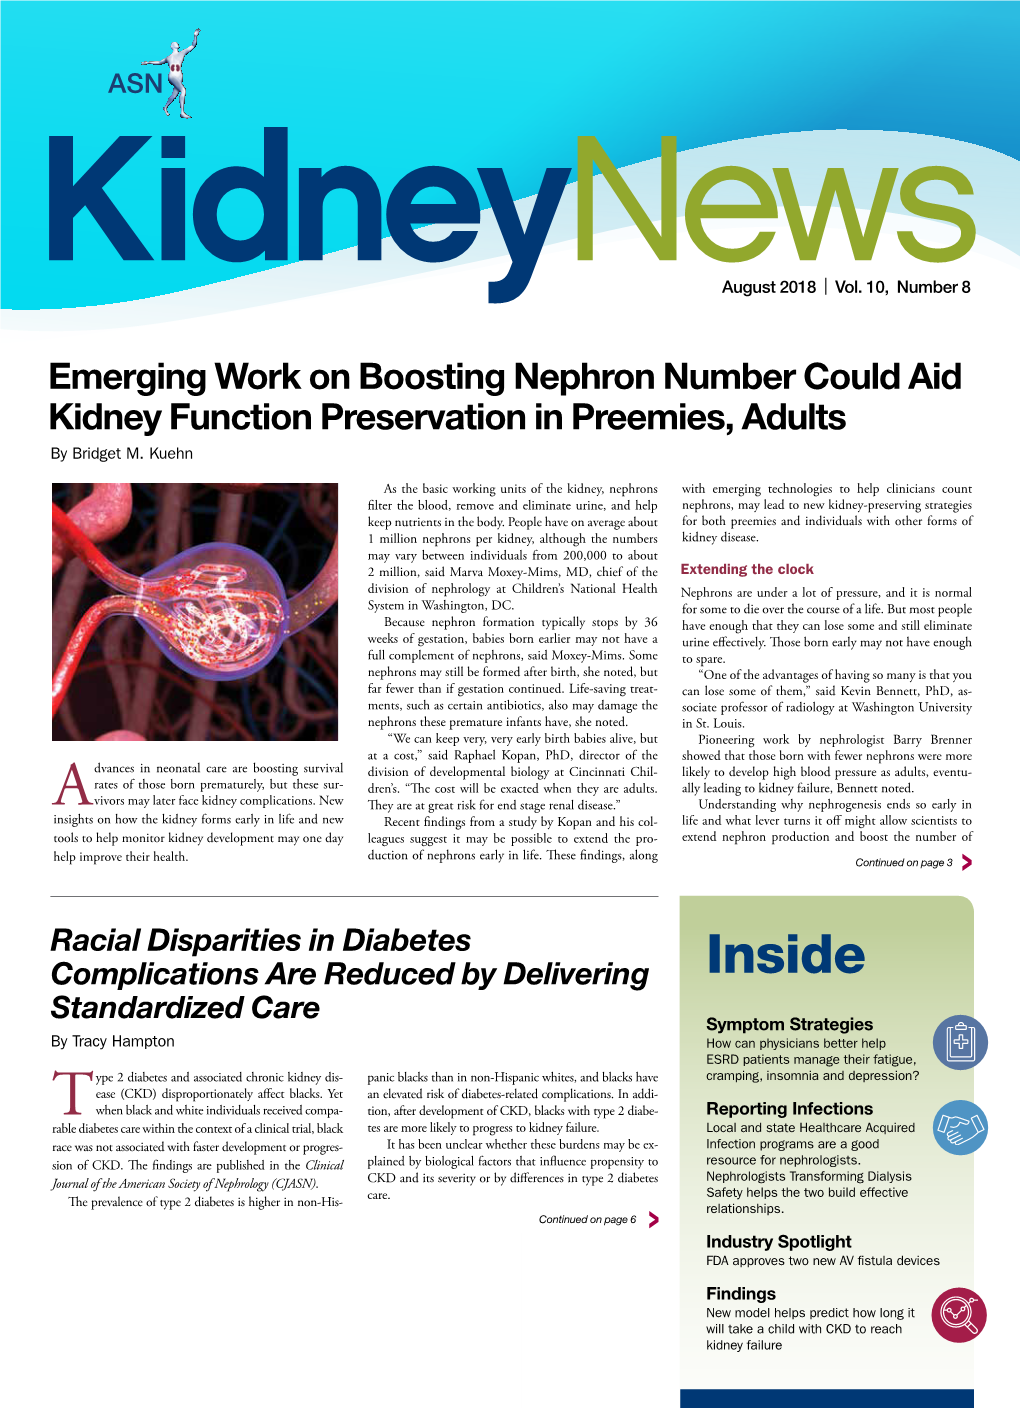 August 2018 Kidney News